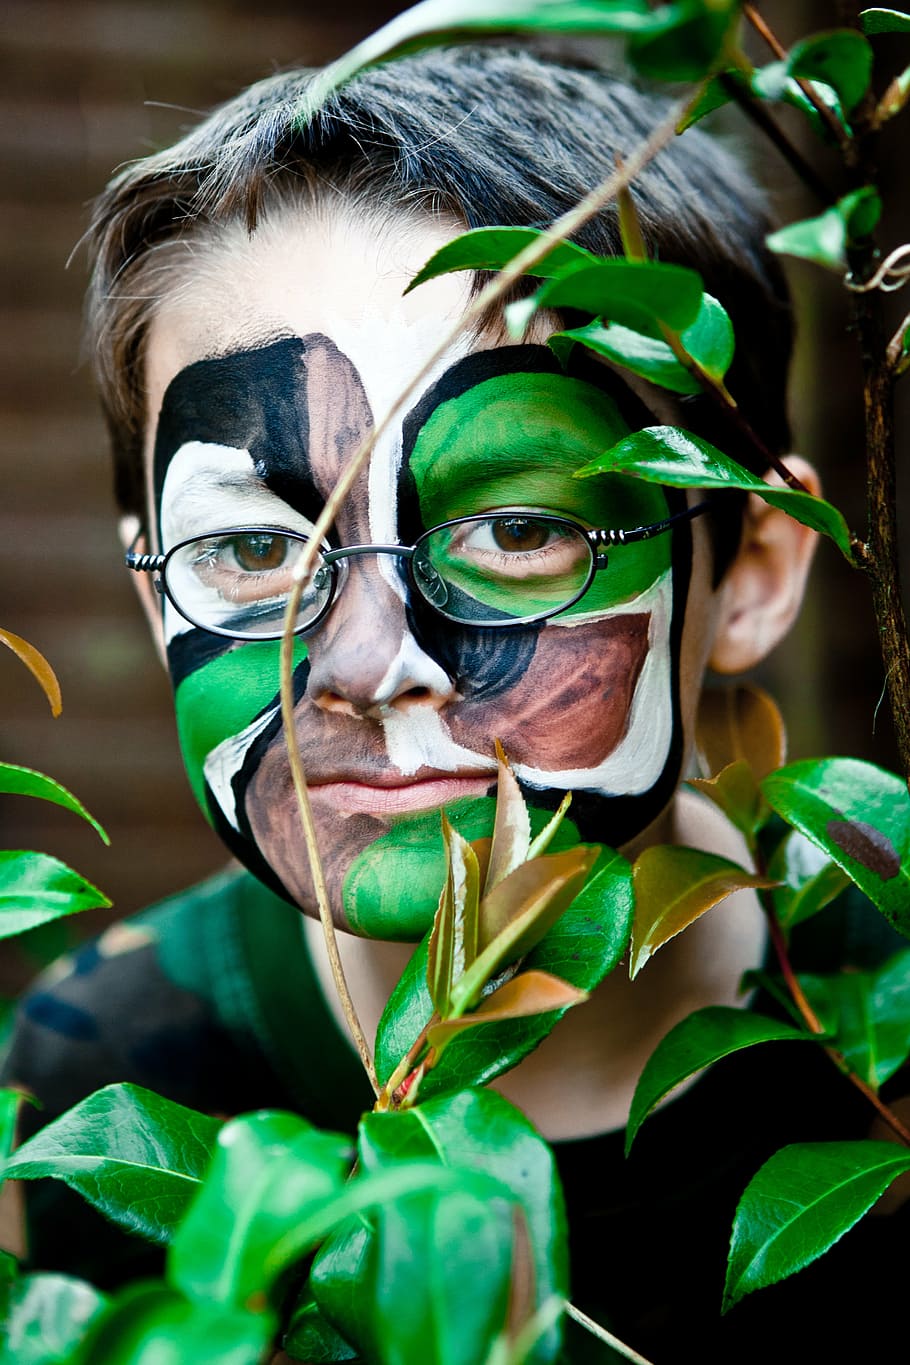 camouflage, hiding, commando, hidden, portrait, one person, plant part, leaf, close-up, green color